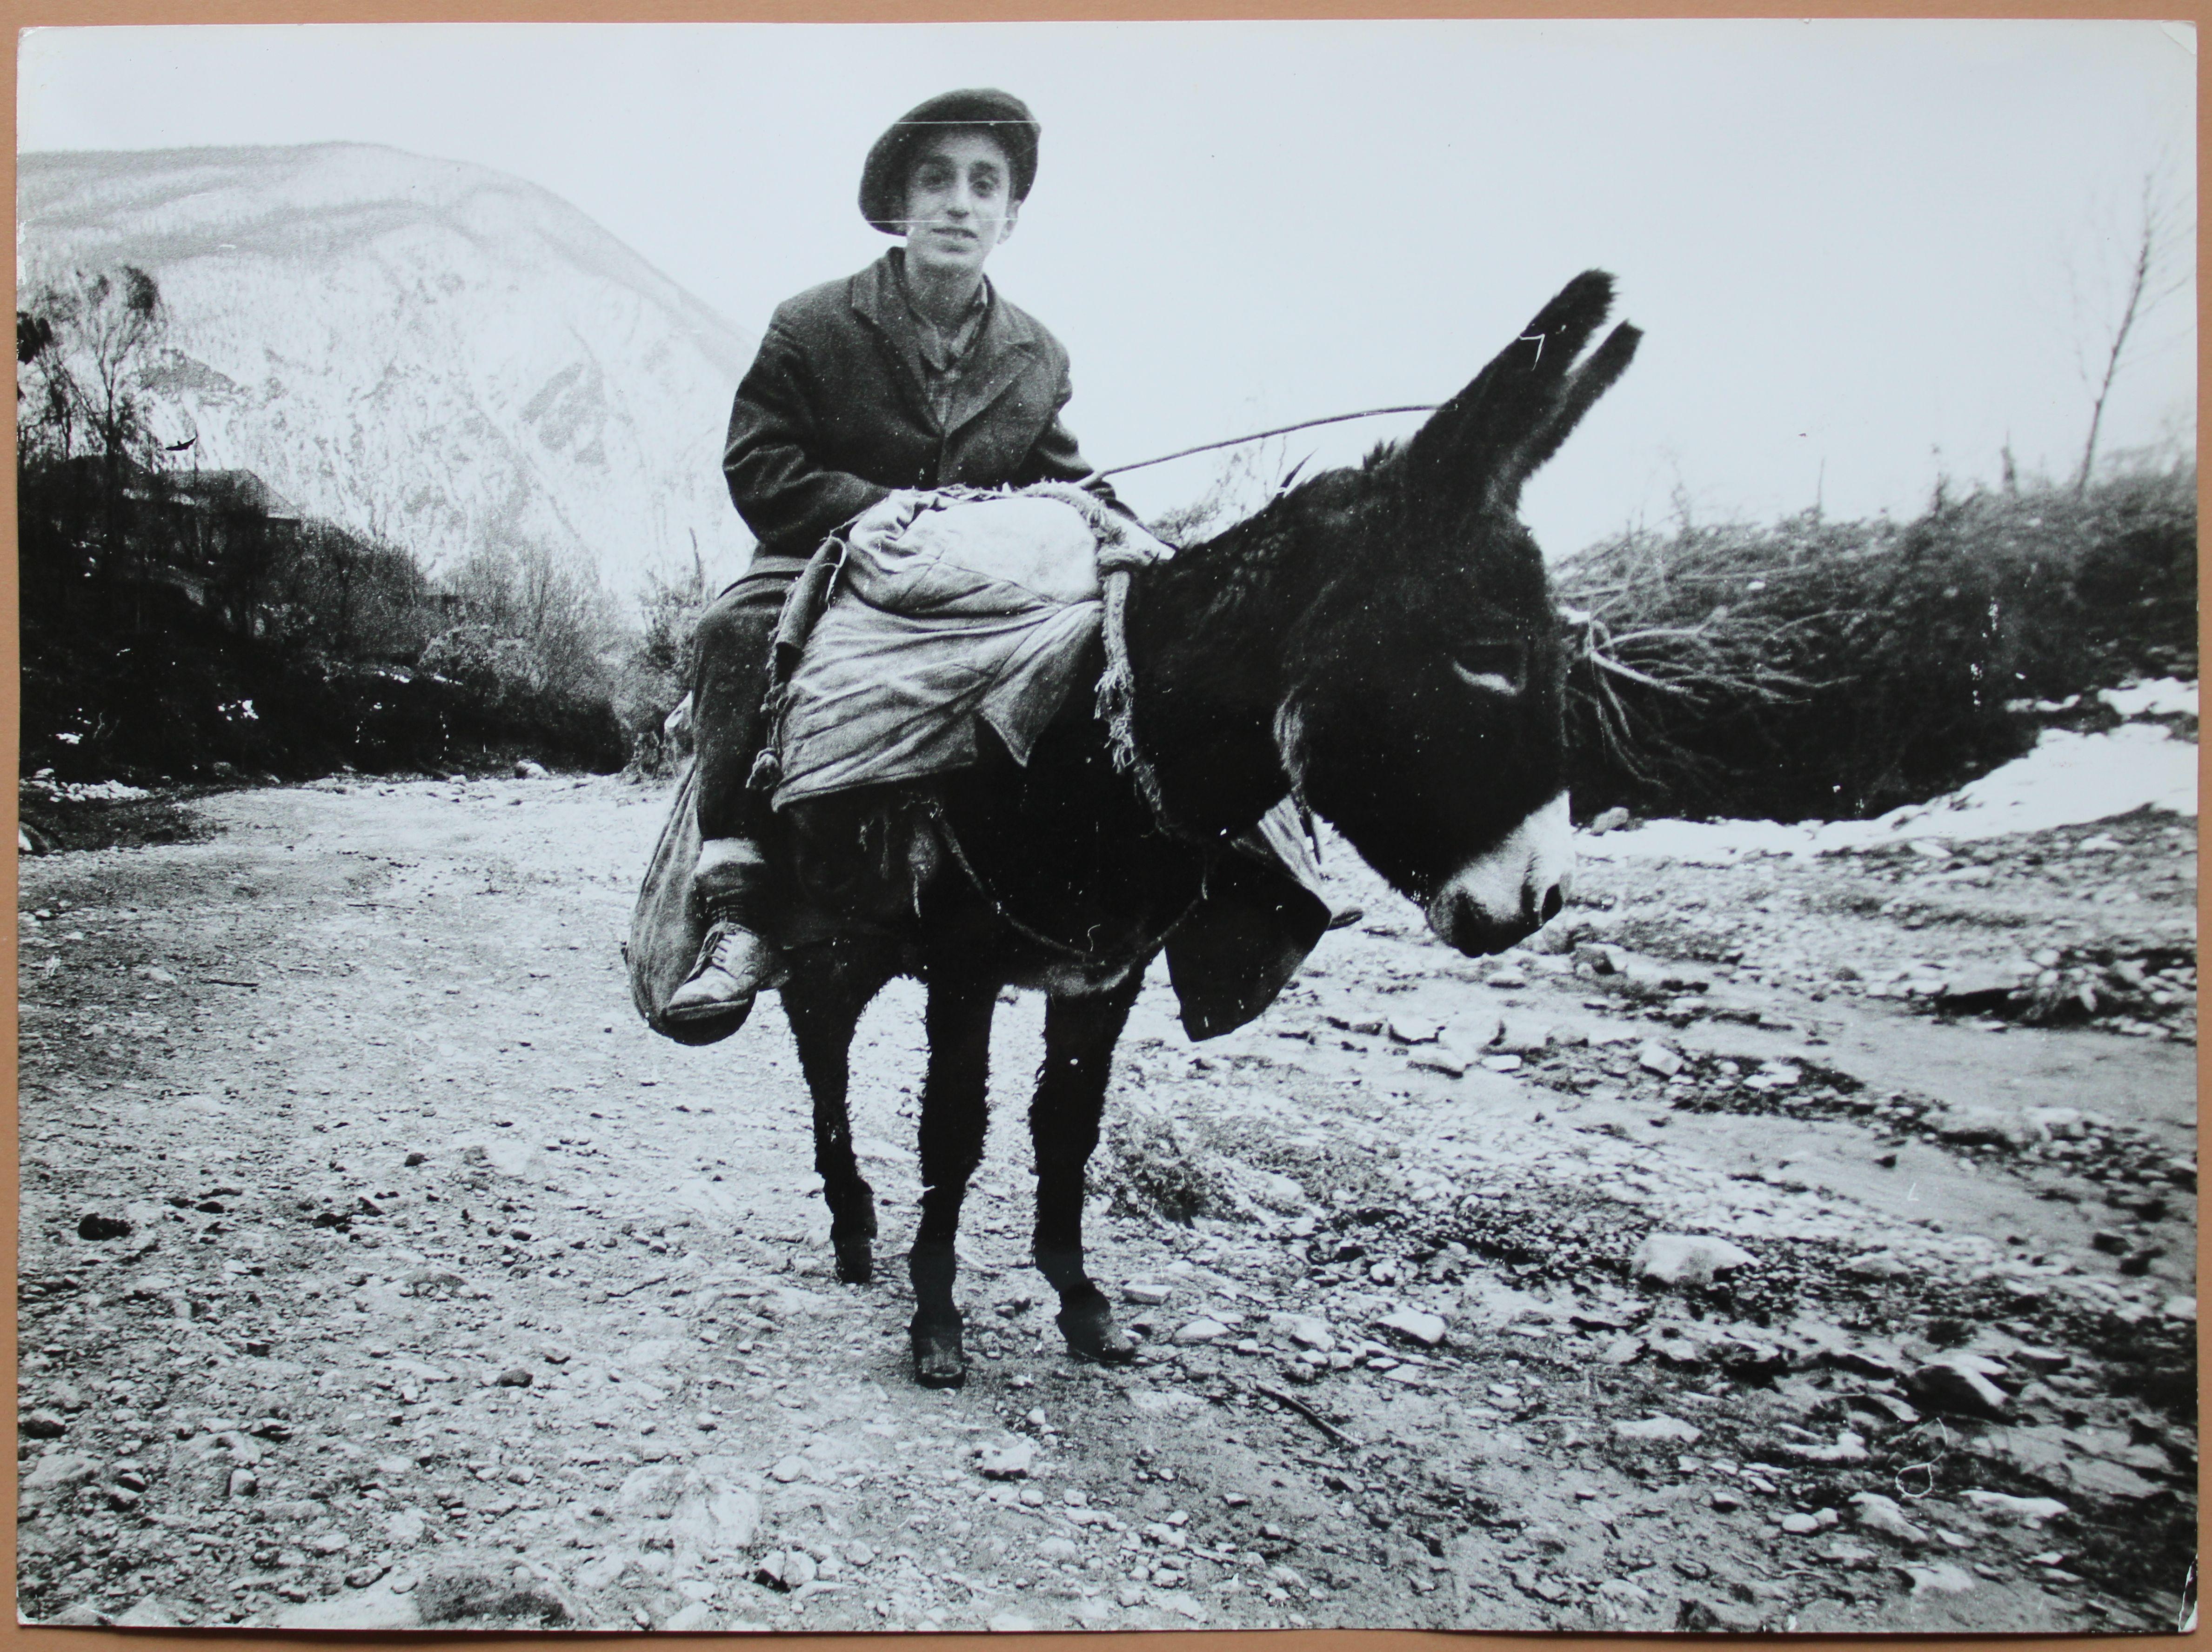 Photography by Dmitry Zyubritsky Boy on the donkey at mountains. 1979. Size 30x40 cm